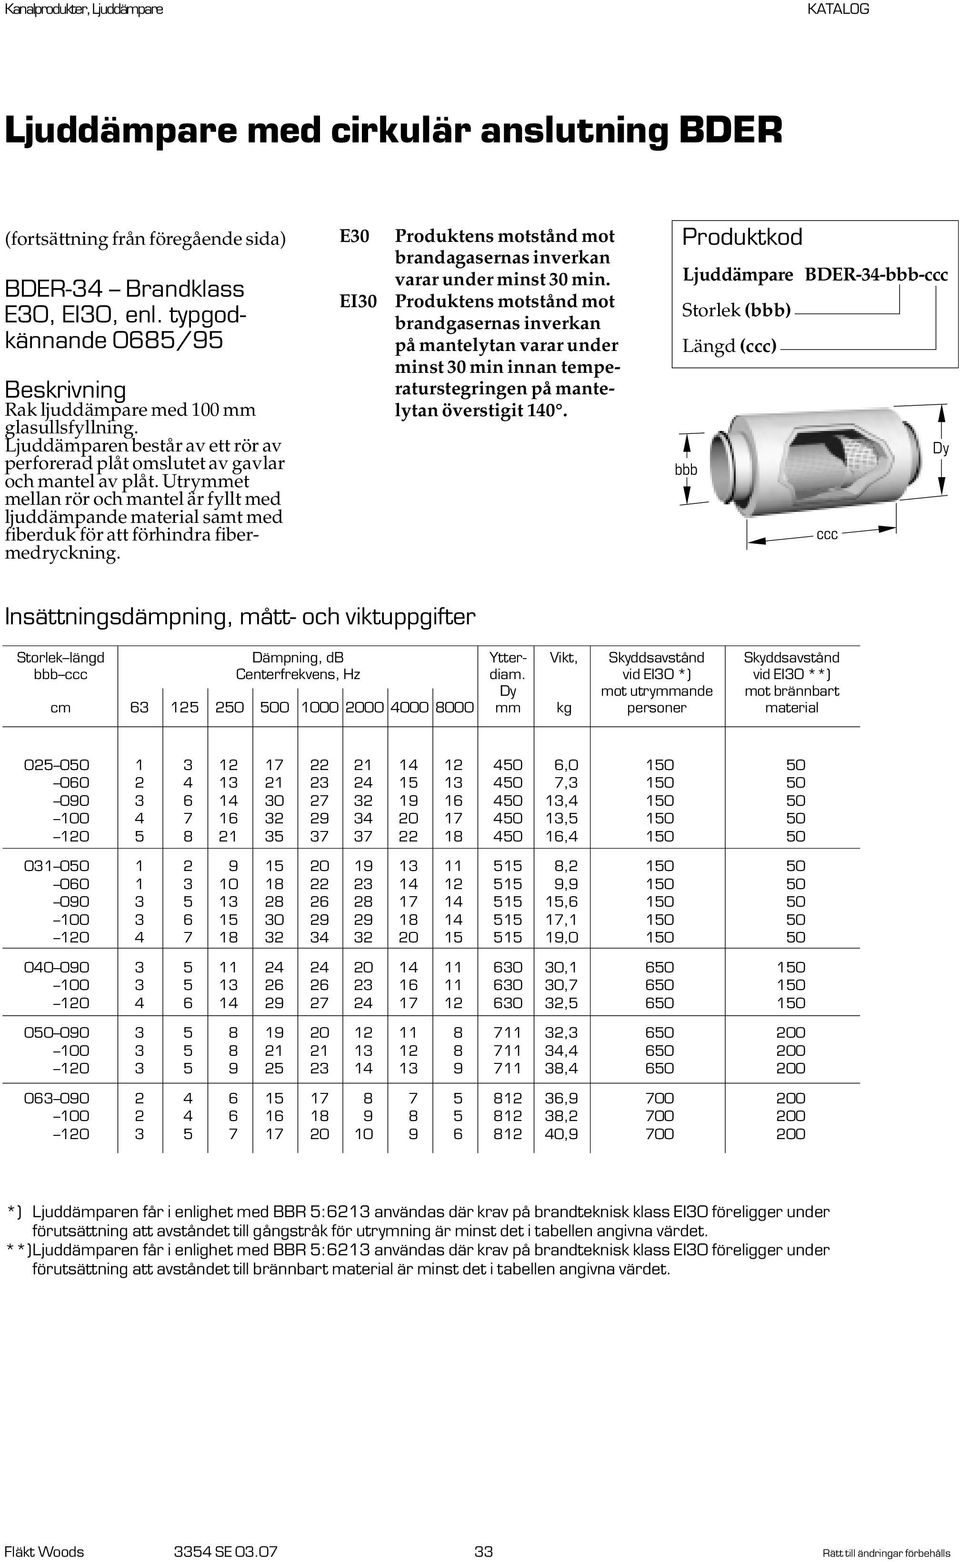 Ljuddämpare BDER-34-- Längd () Storlek längd Dämpning, db Ytter- Vikt, Skyddsavstånd Skyddsavstånd Centerfrekvens, Hz diam.